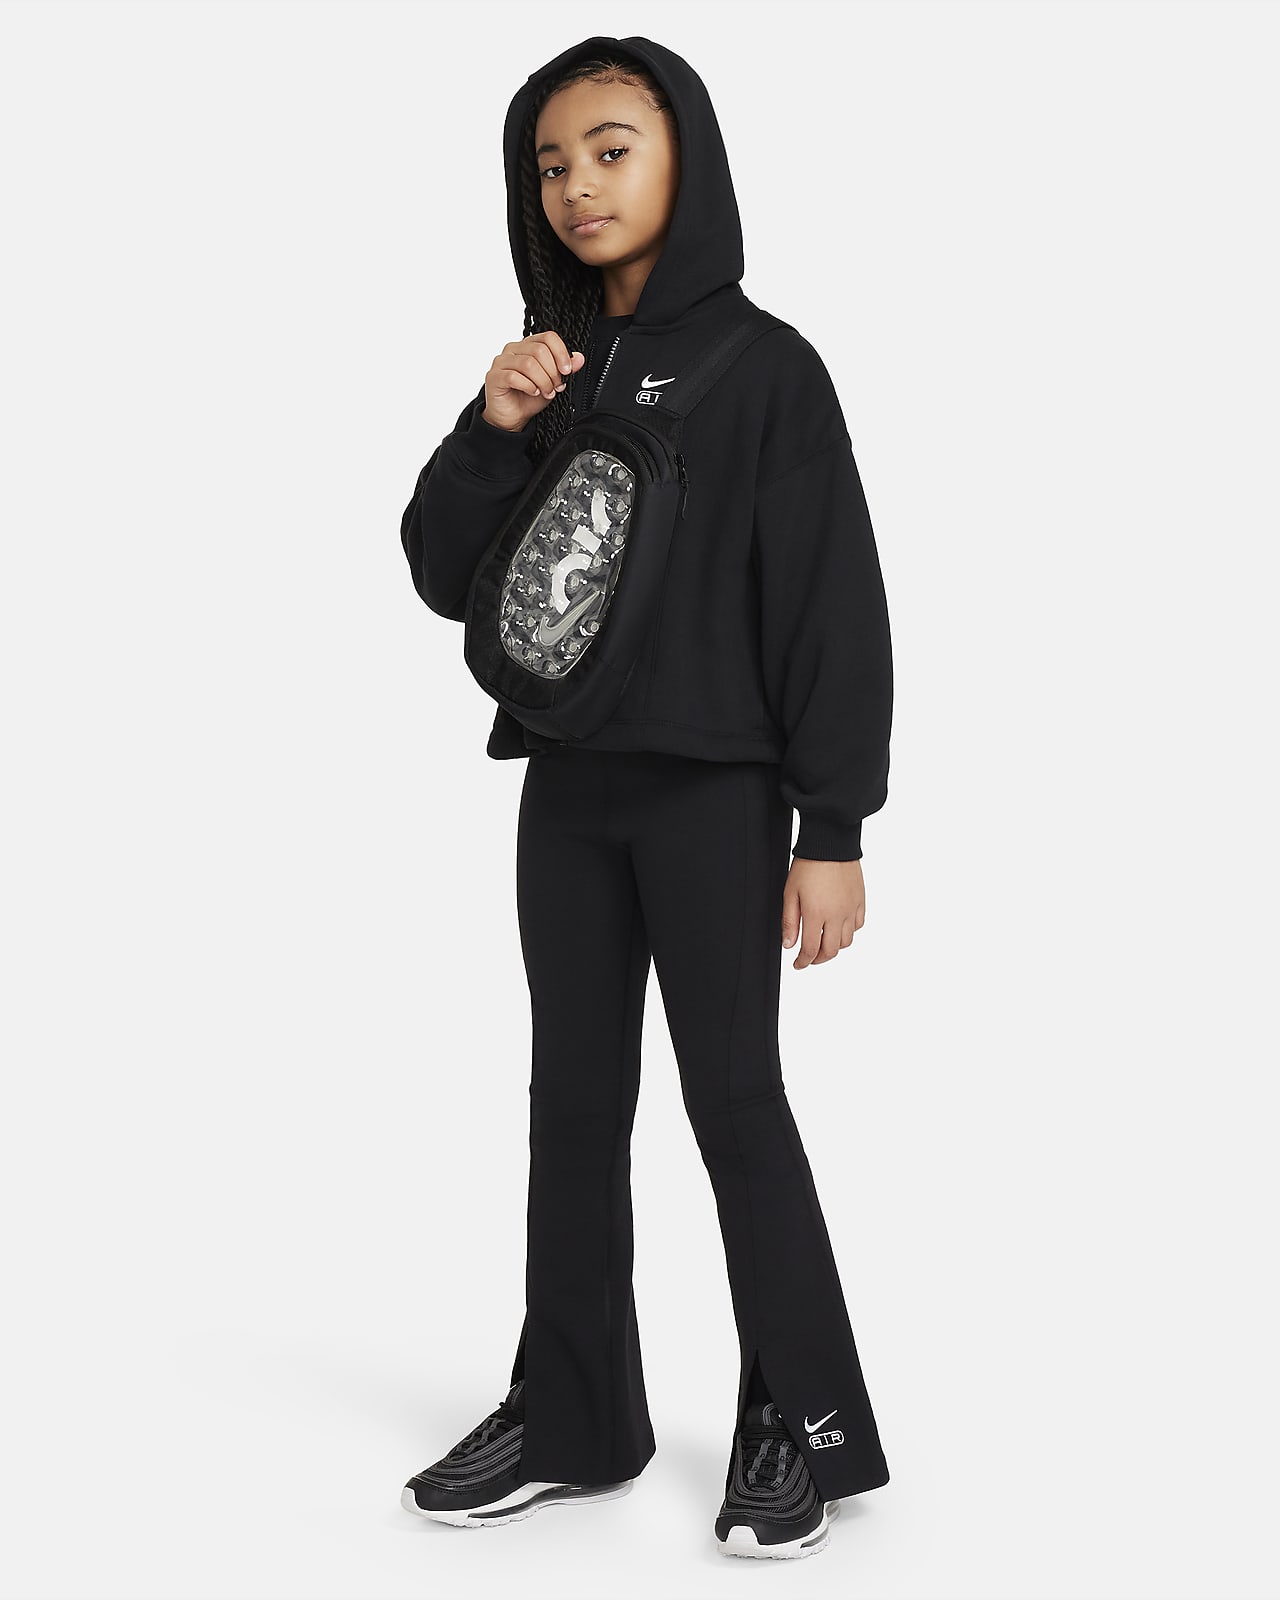 Girls Nike Nike High Waisted Leggings - Girls' Grade School Black/White Size  L - Yahoo Shopping